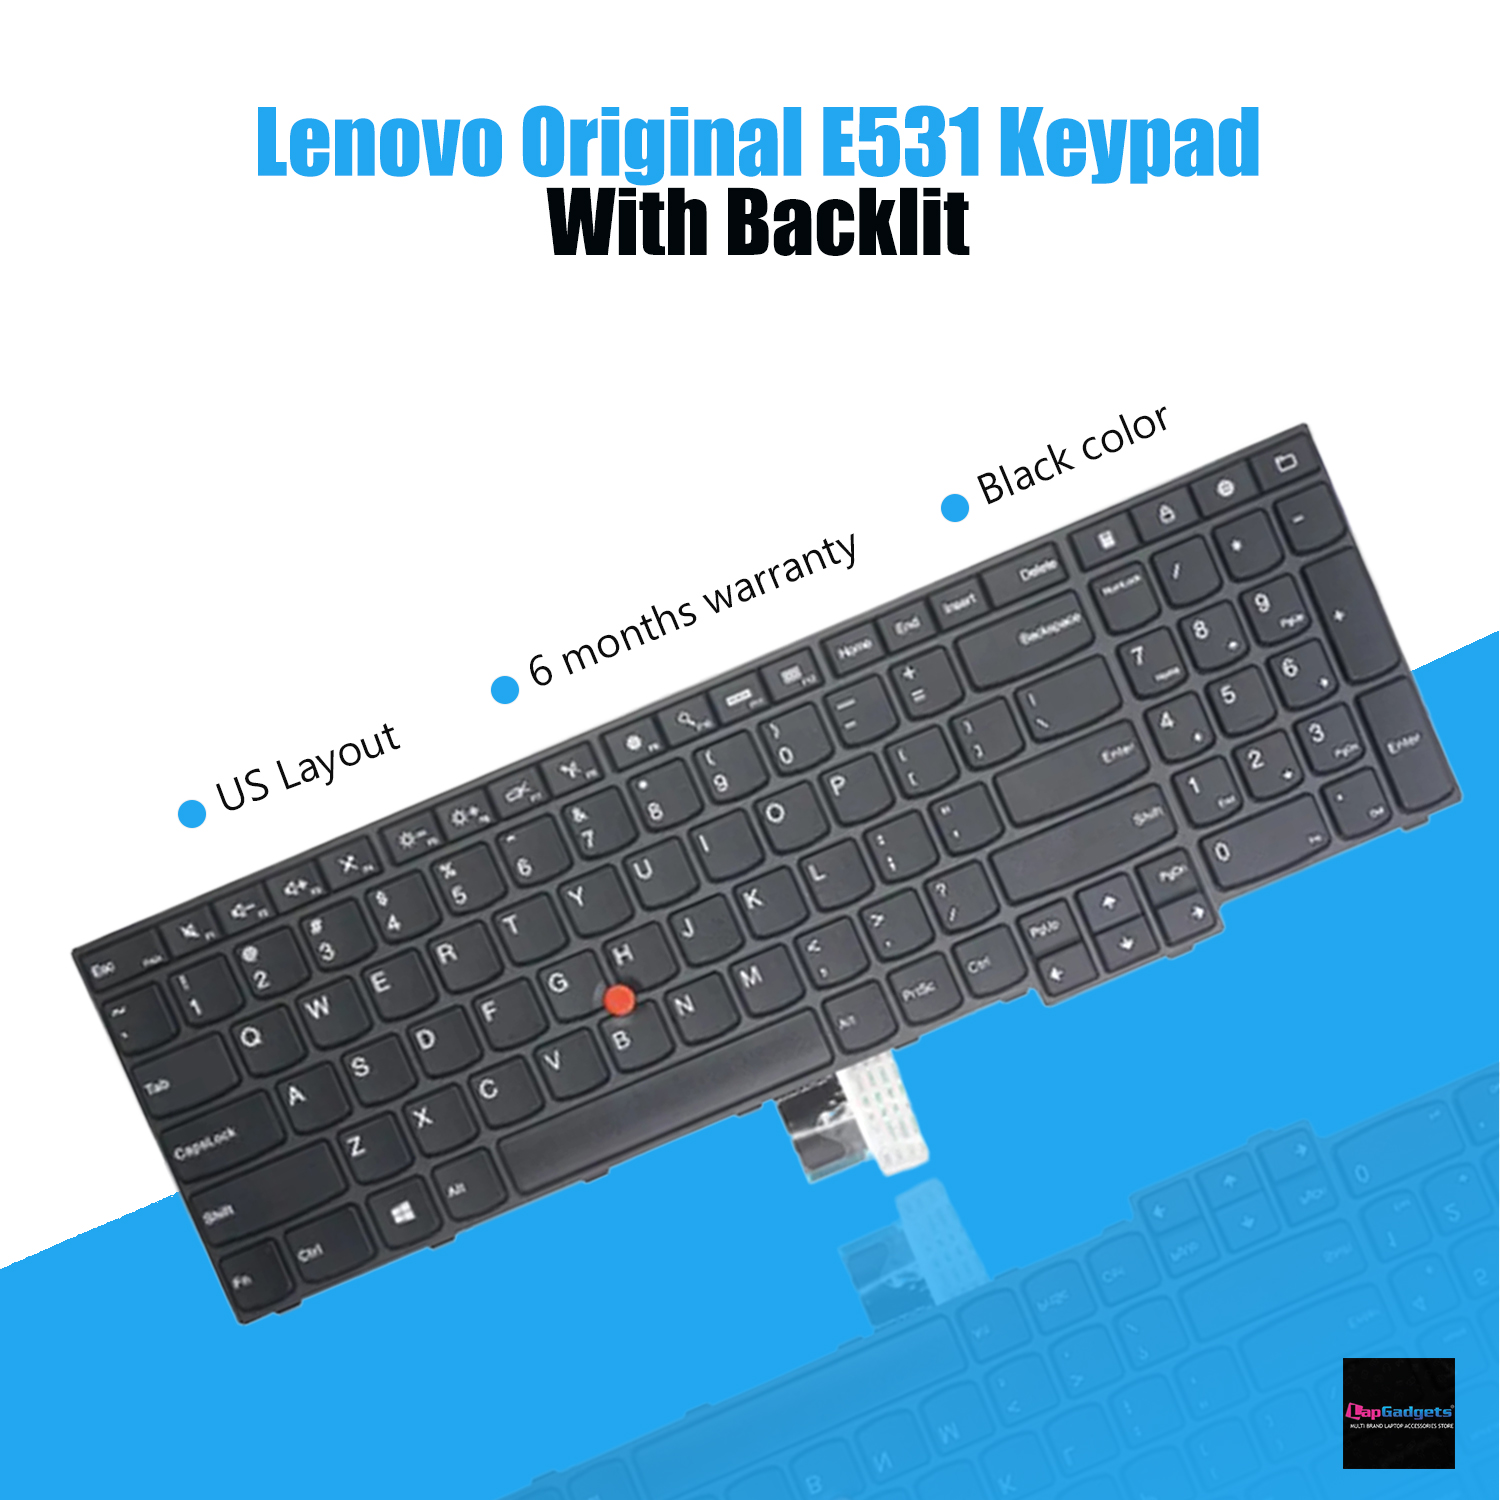 ThinkPad Backlit Keyboard